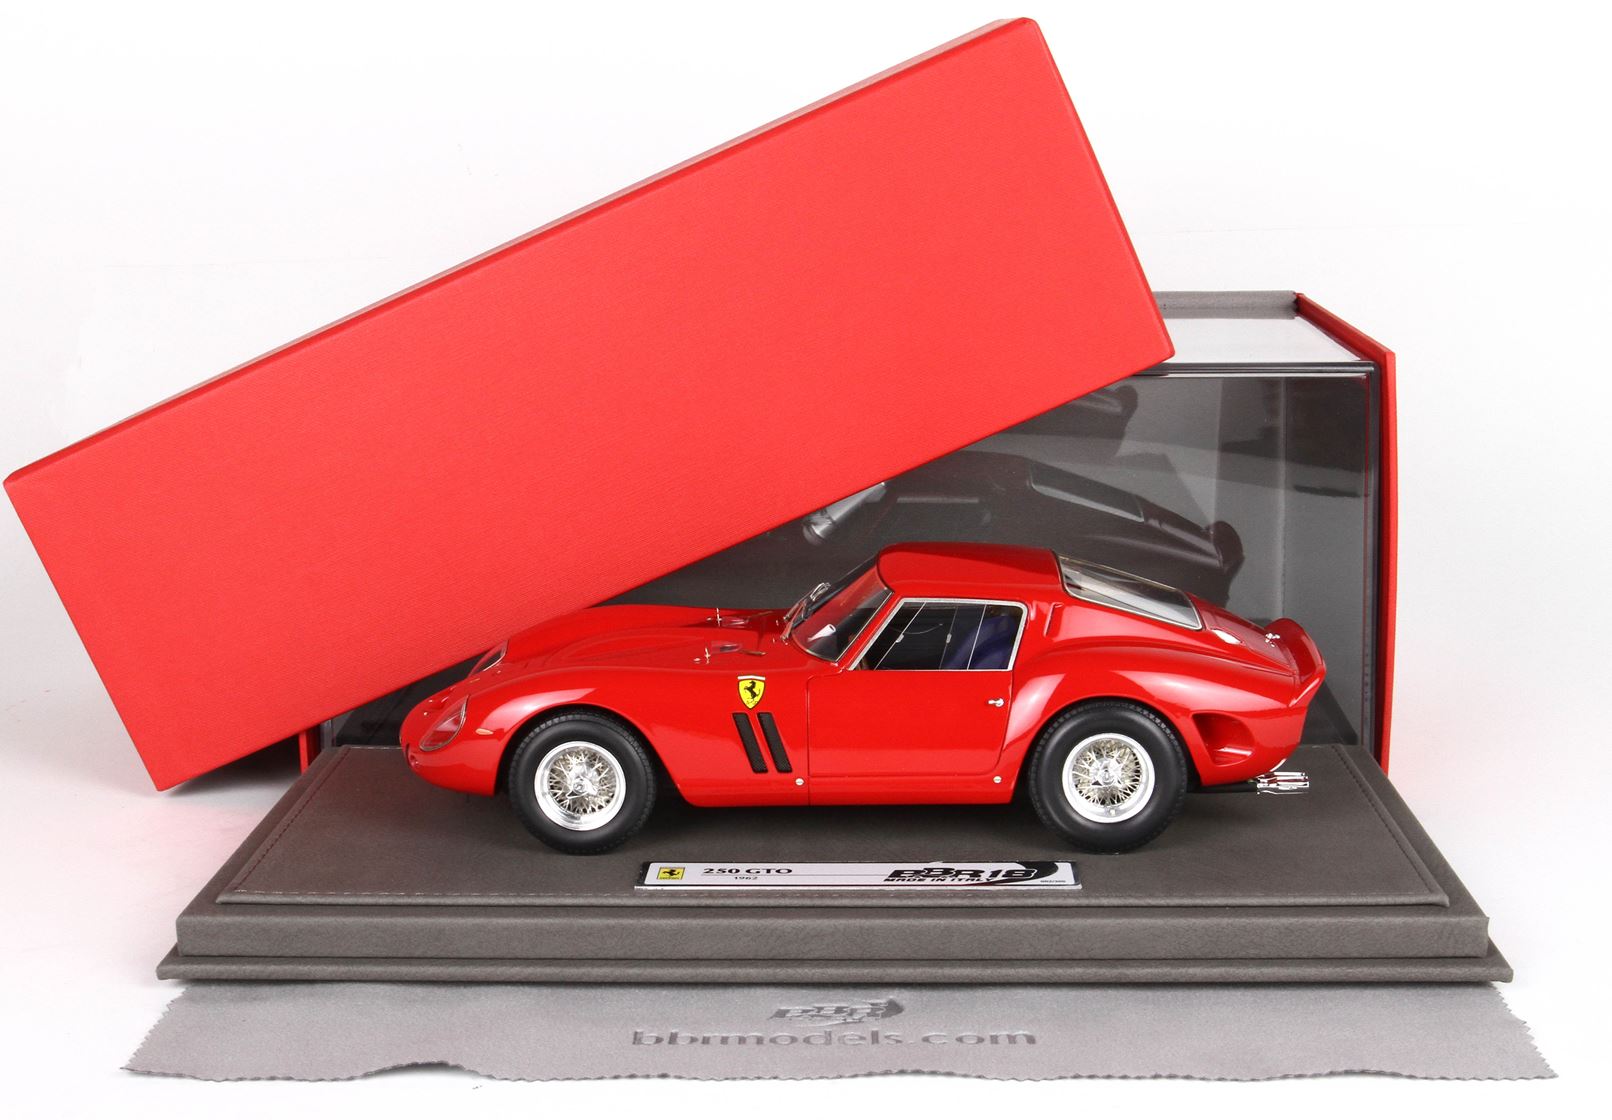 BBR 1:18 scale Ferrari 250 GTO